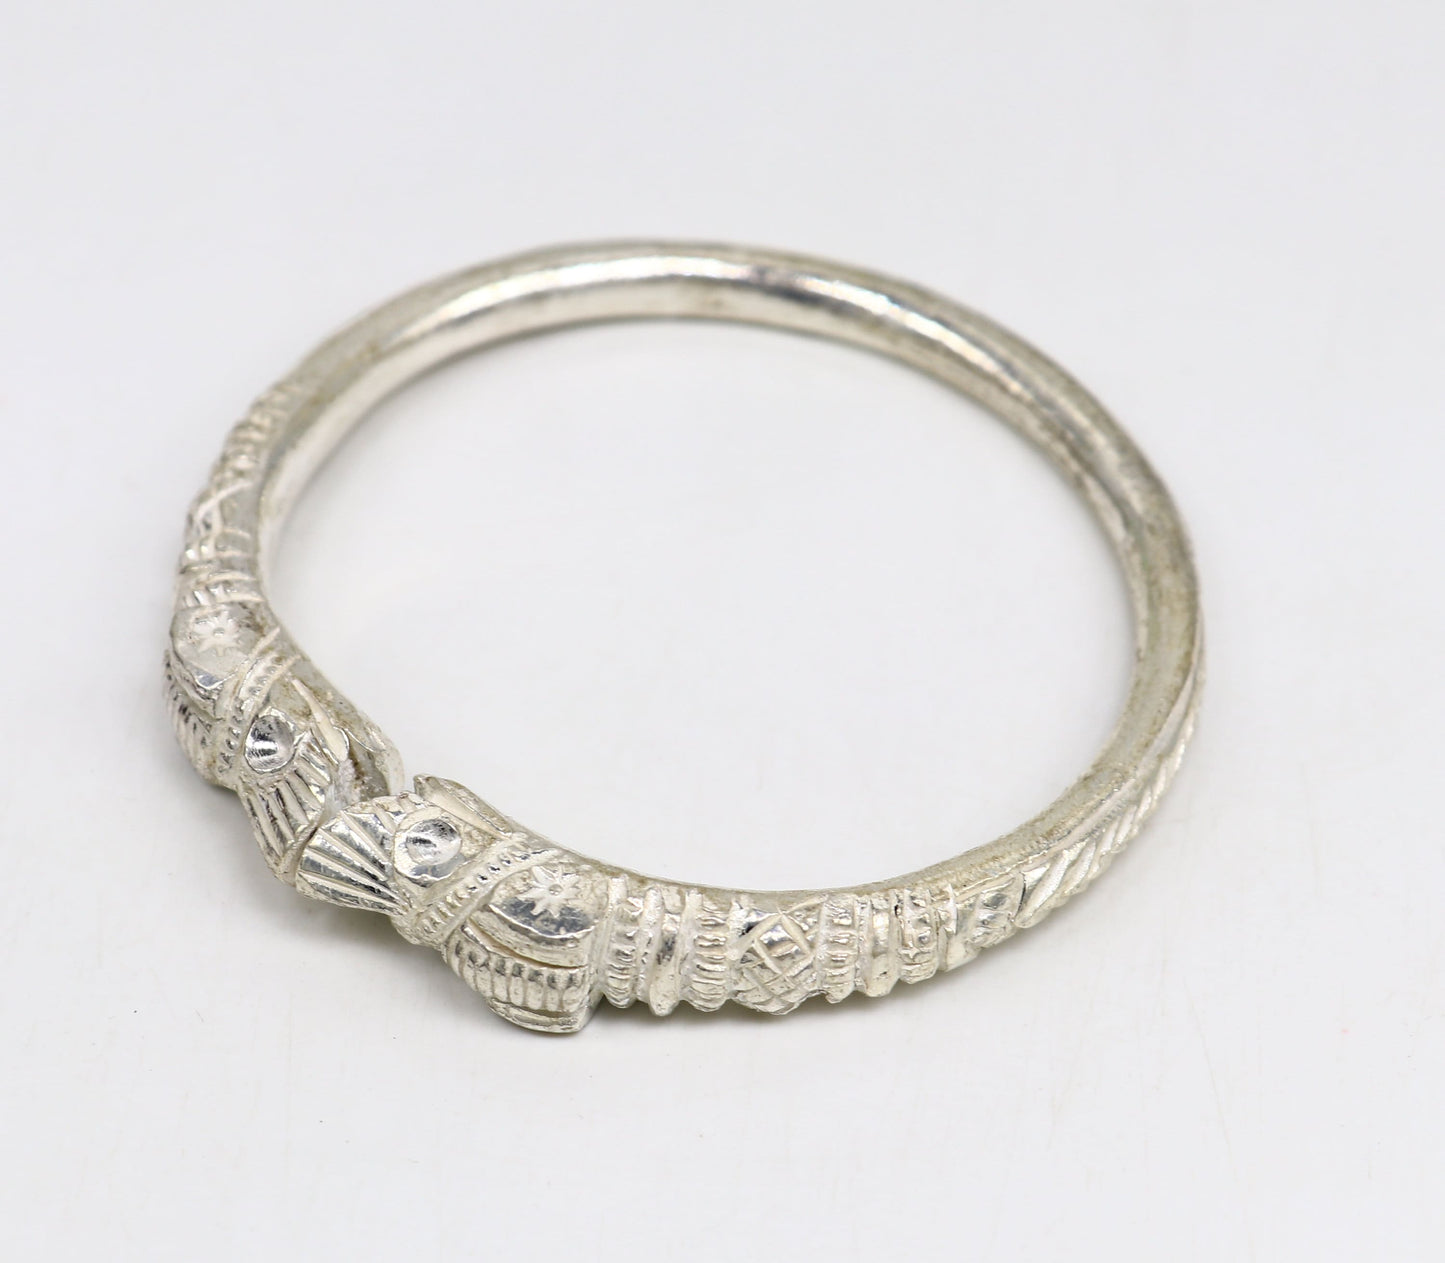 Vintage design handmade Solid silver men's bangle bracelet adjustable kada solid crocodile face tribal design bangle gifting kada nssk441 - TRIBAL ORNAMENTS